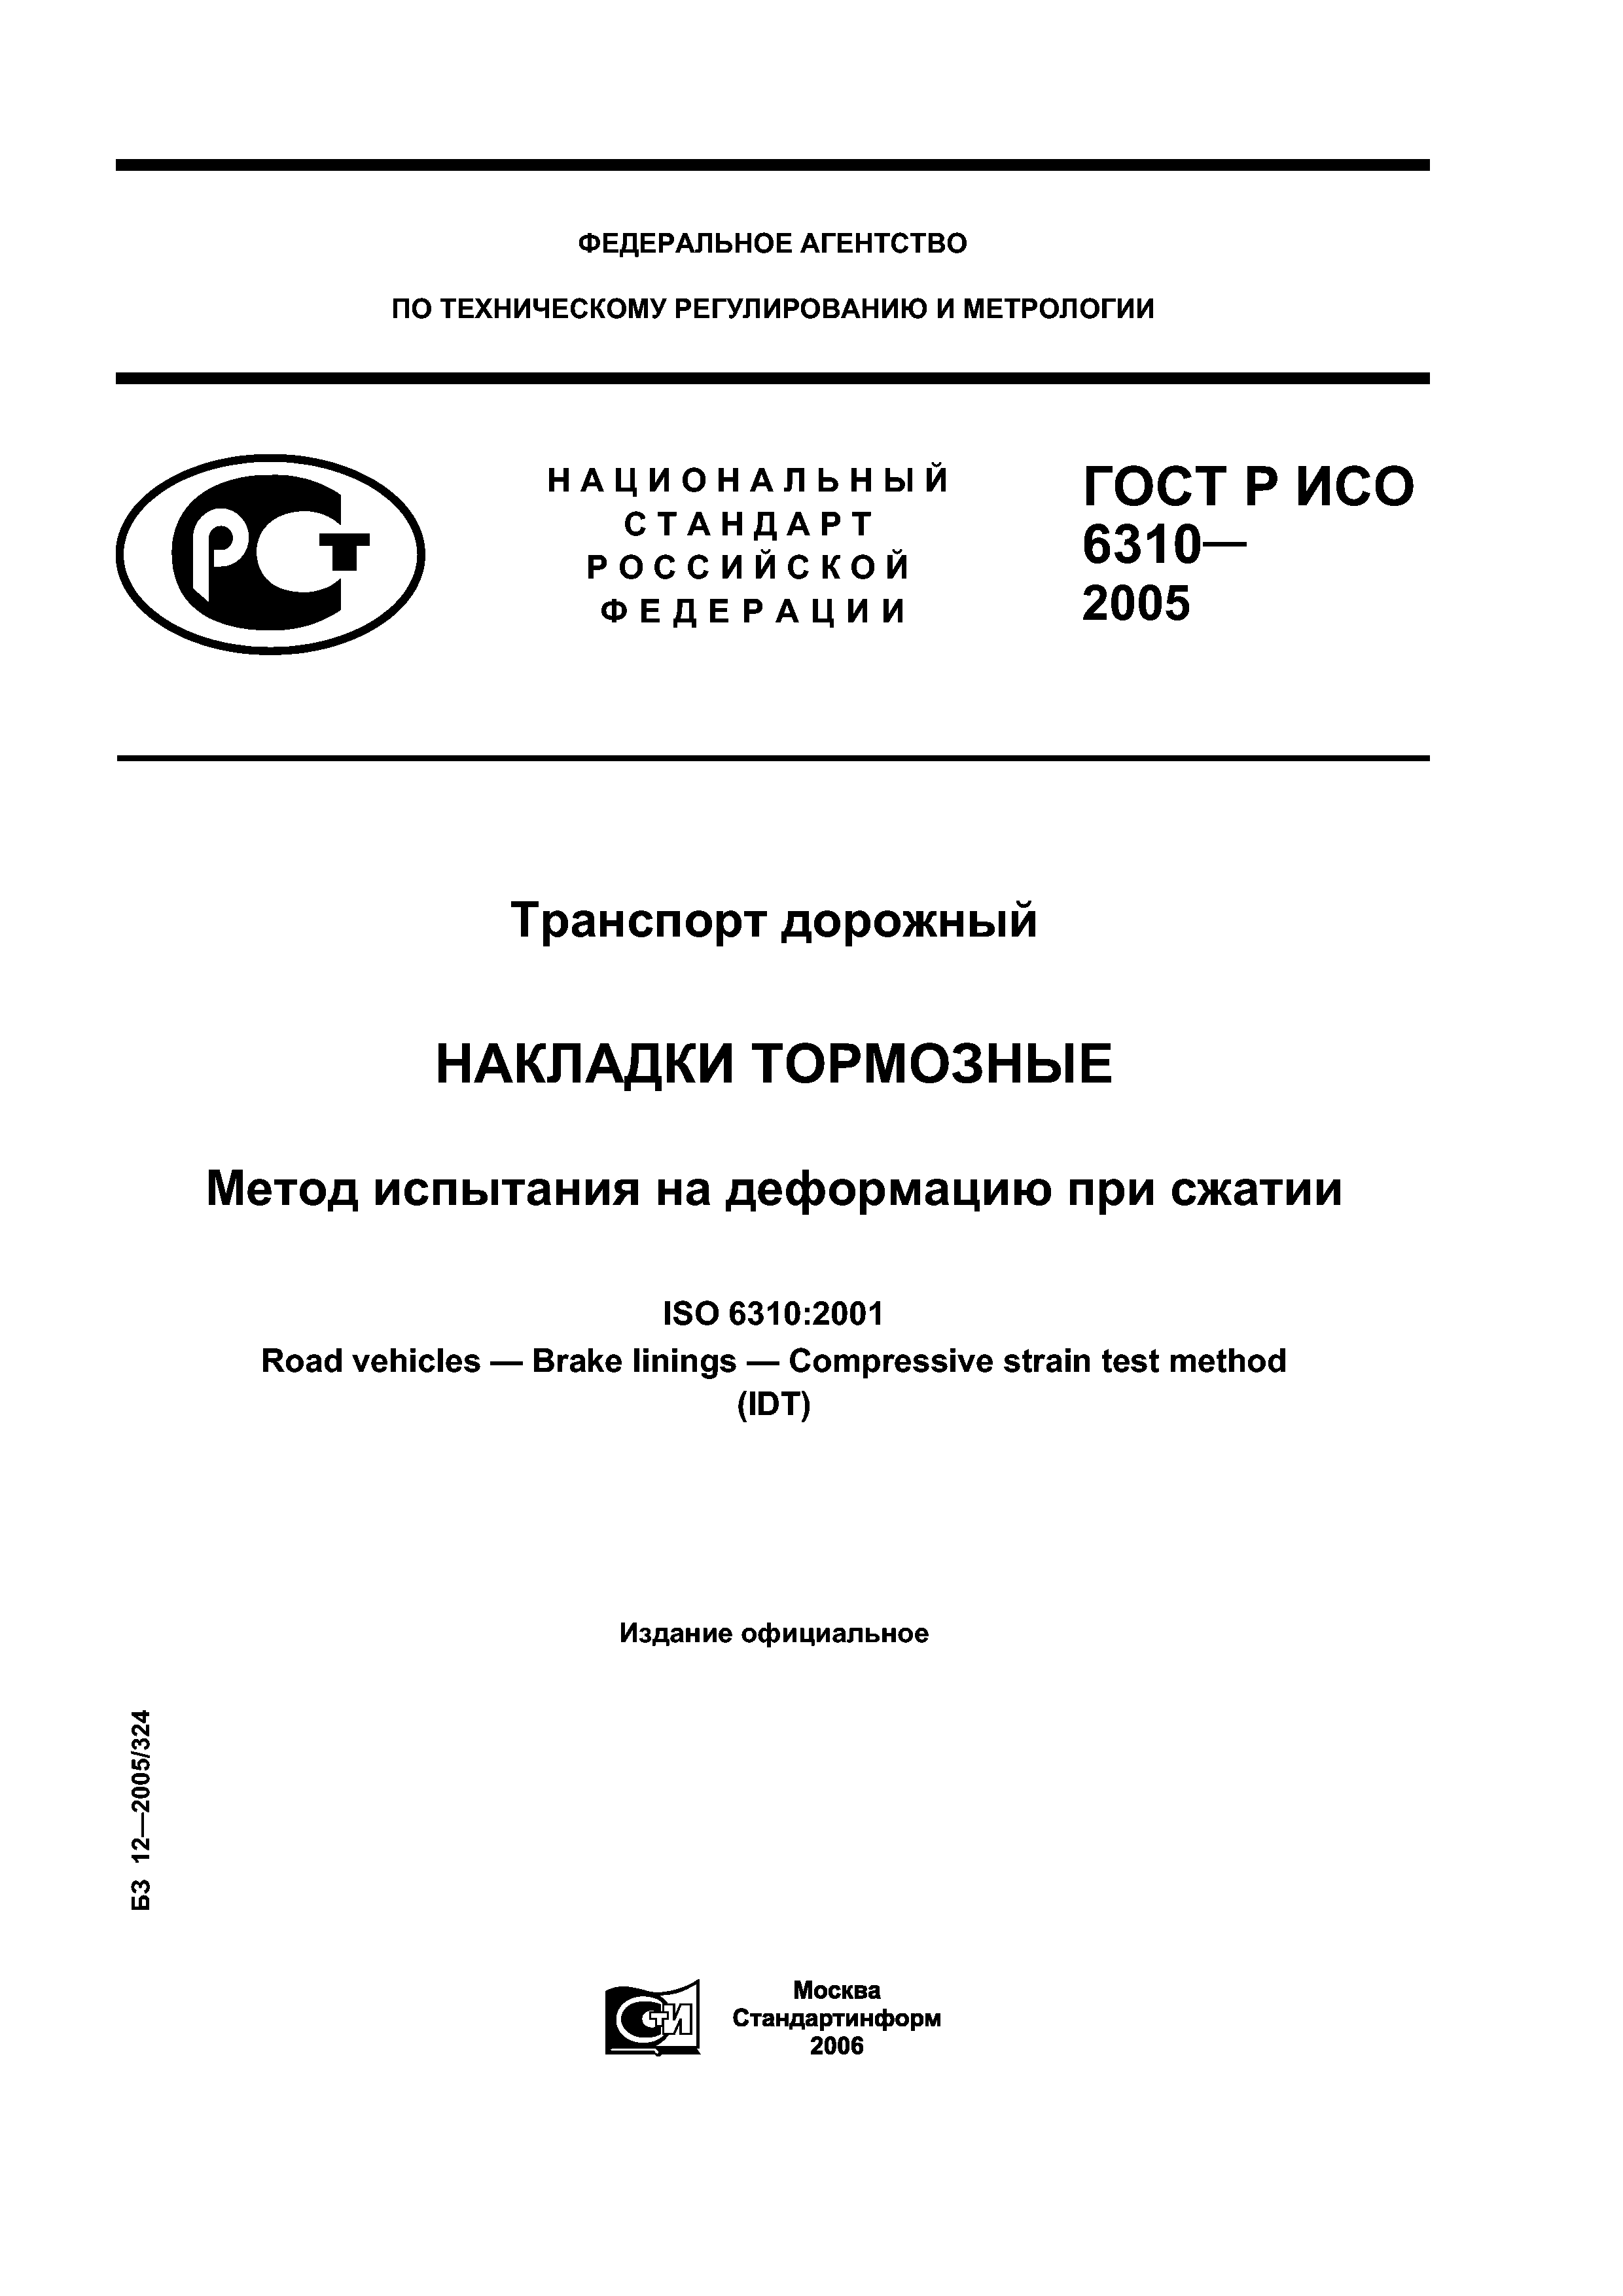 ГОСТ Р ИСО 6310-2005